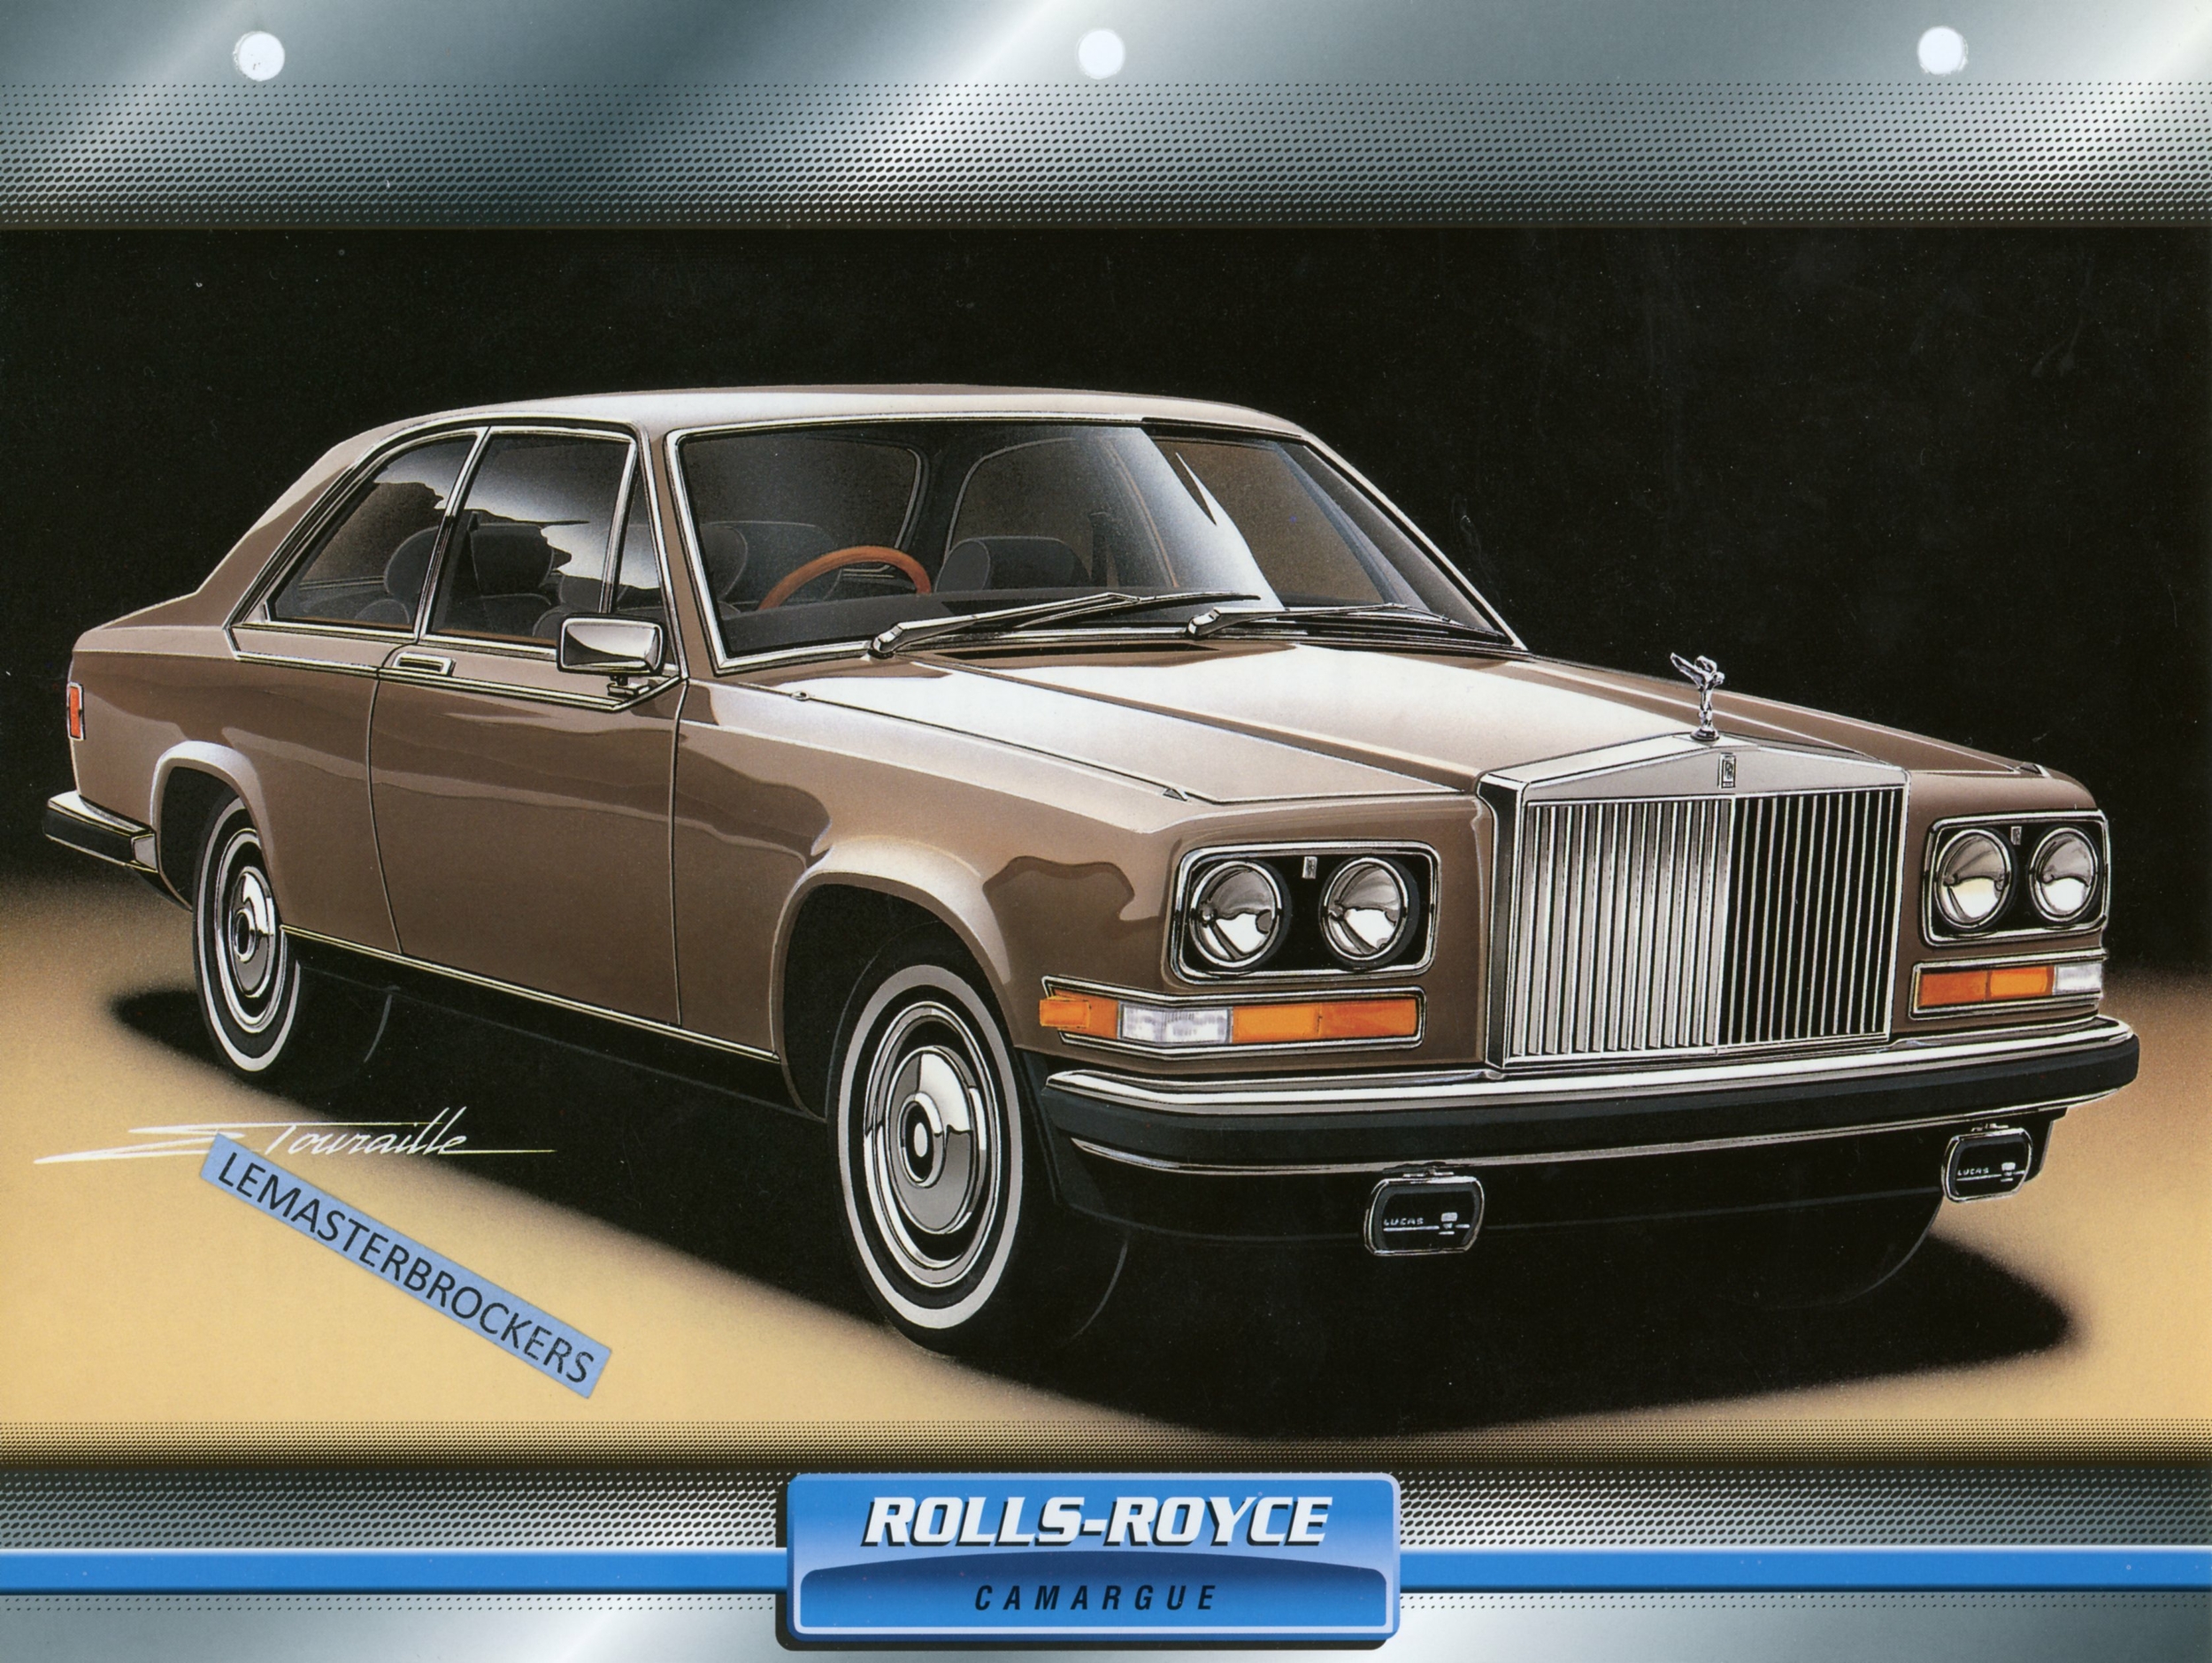 ROLLS-ROYCE CAMARGUE 1975 - FICHE TECHNIQUE - FICHE AUTO - ATLAS LITTÉRATURE AUTOMOBILE